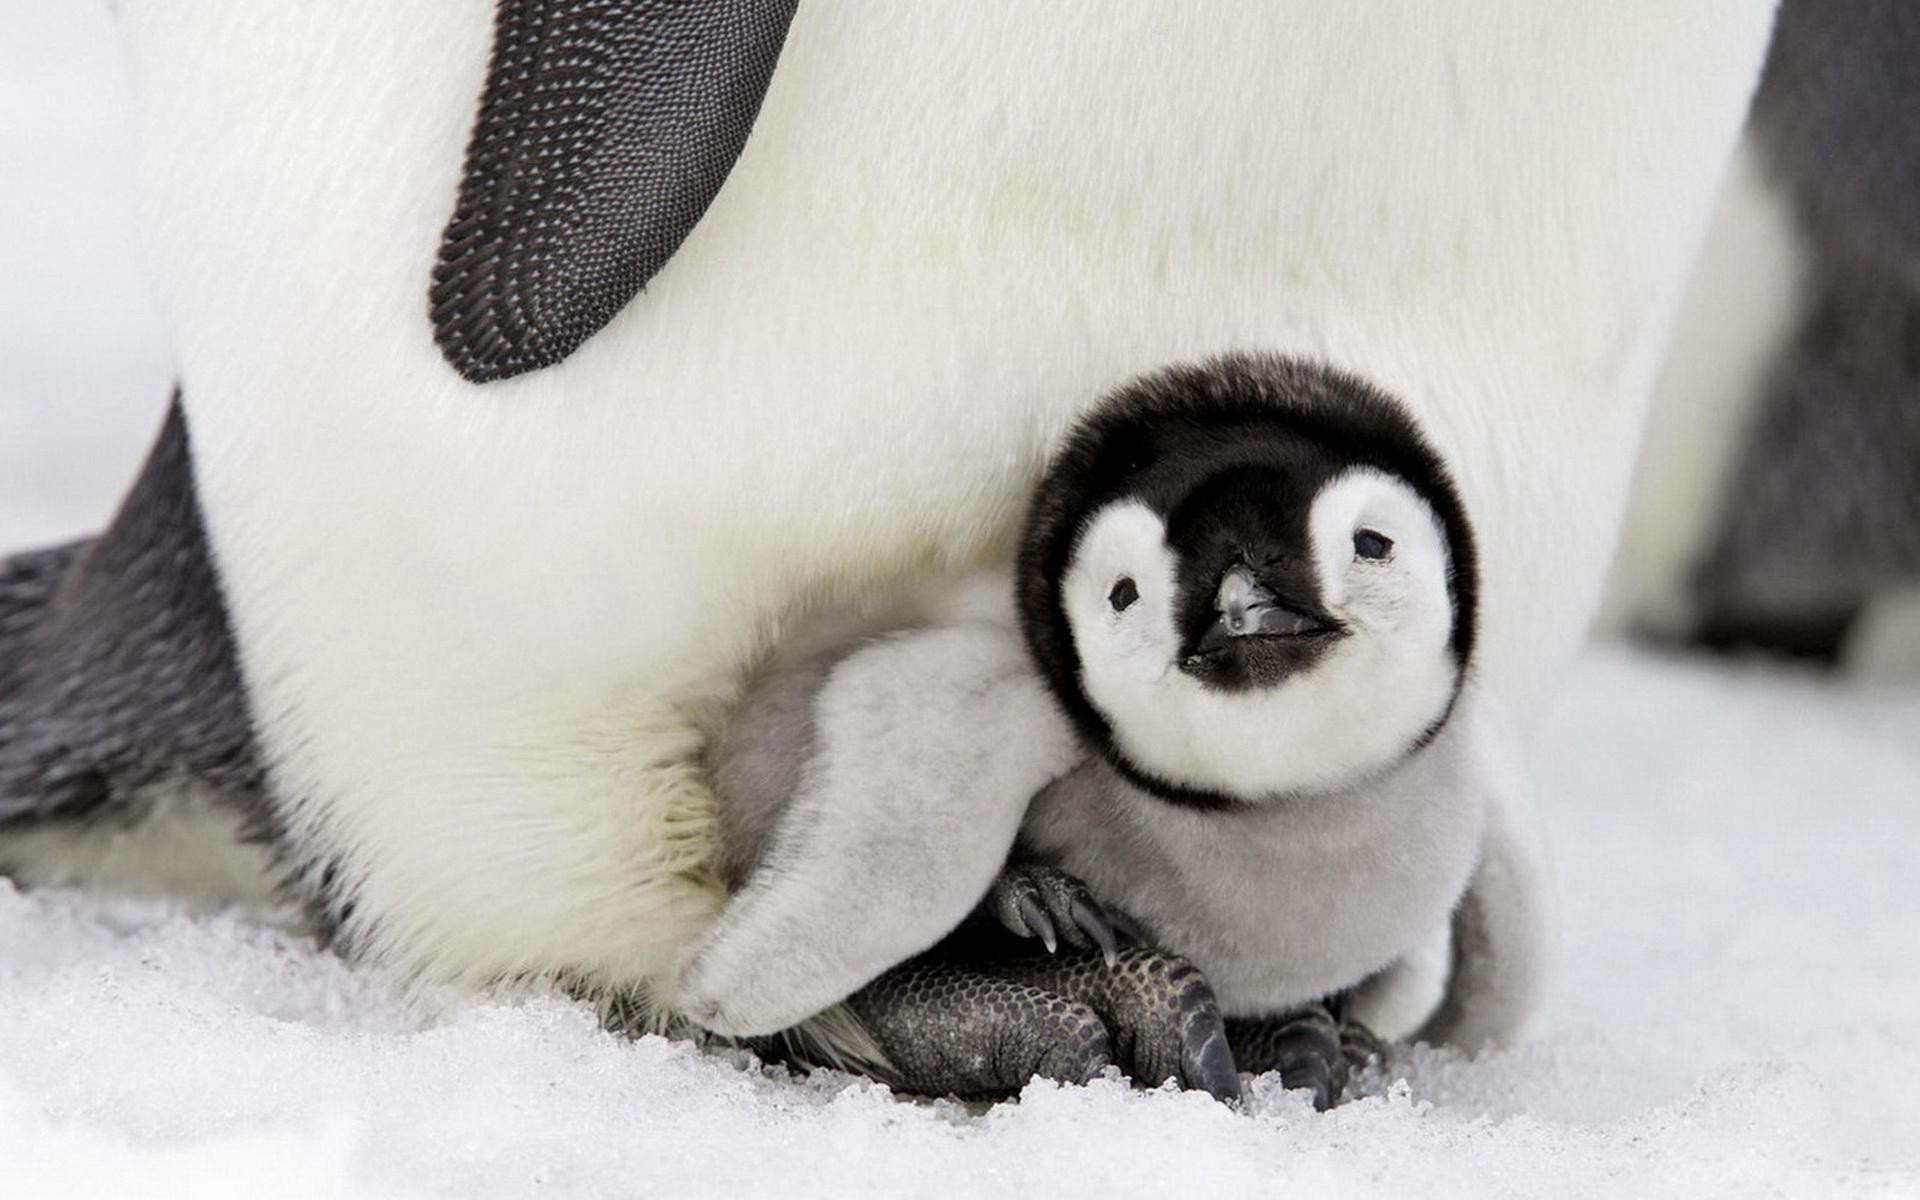 Adorable penguin chicks, Antarctic wildlife, Snowy wonders, Emperor penguins, 1920x1200 HD Desktop